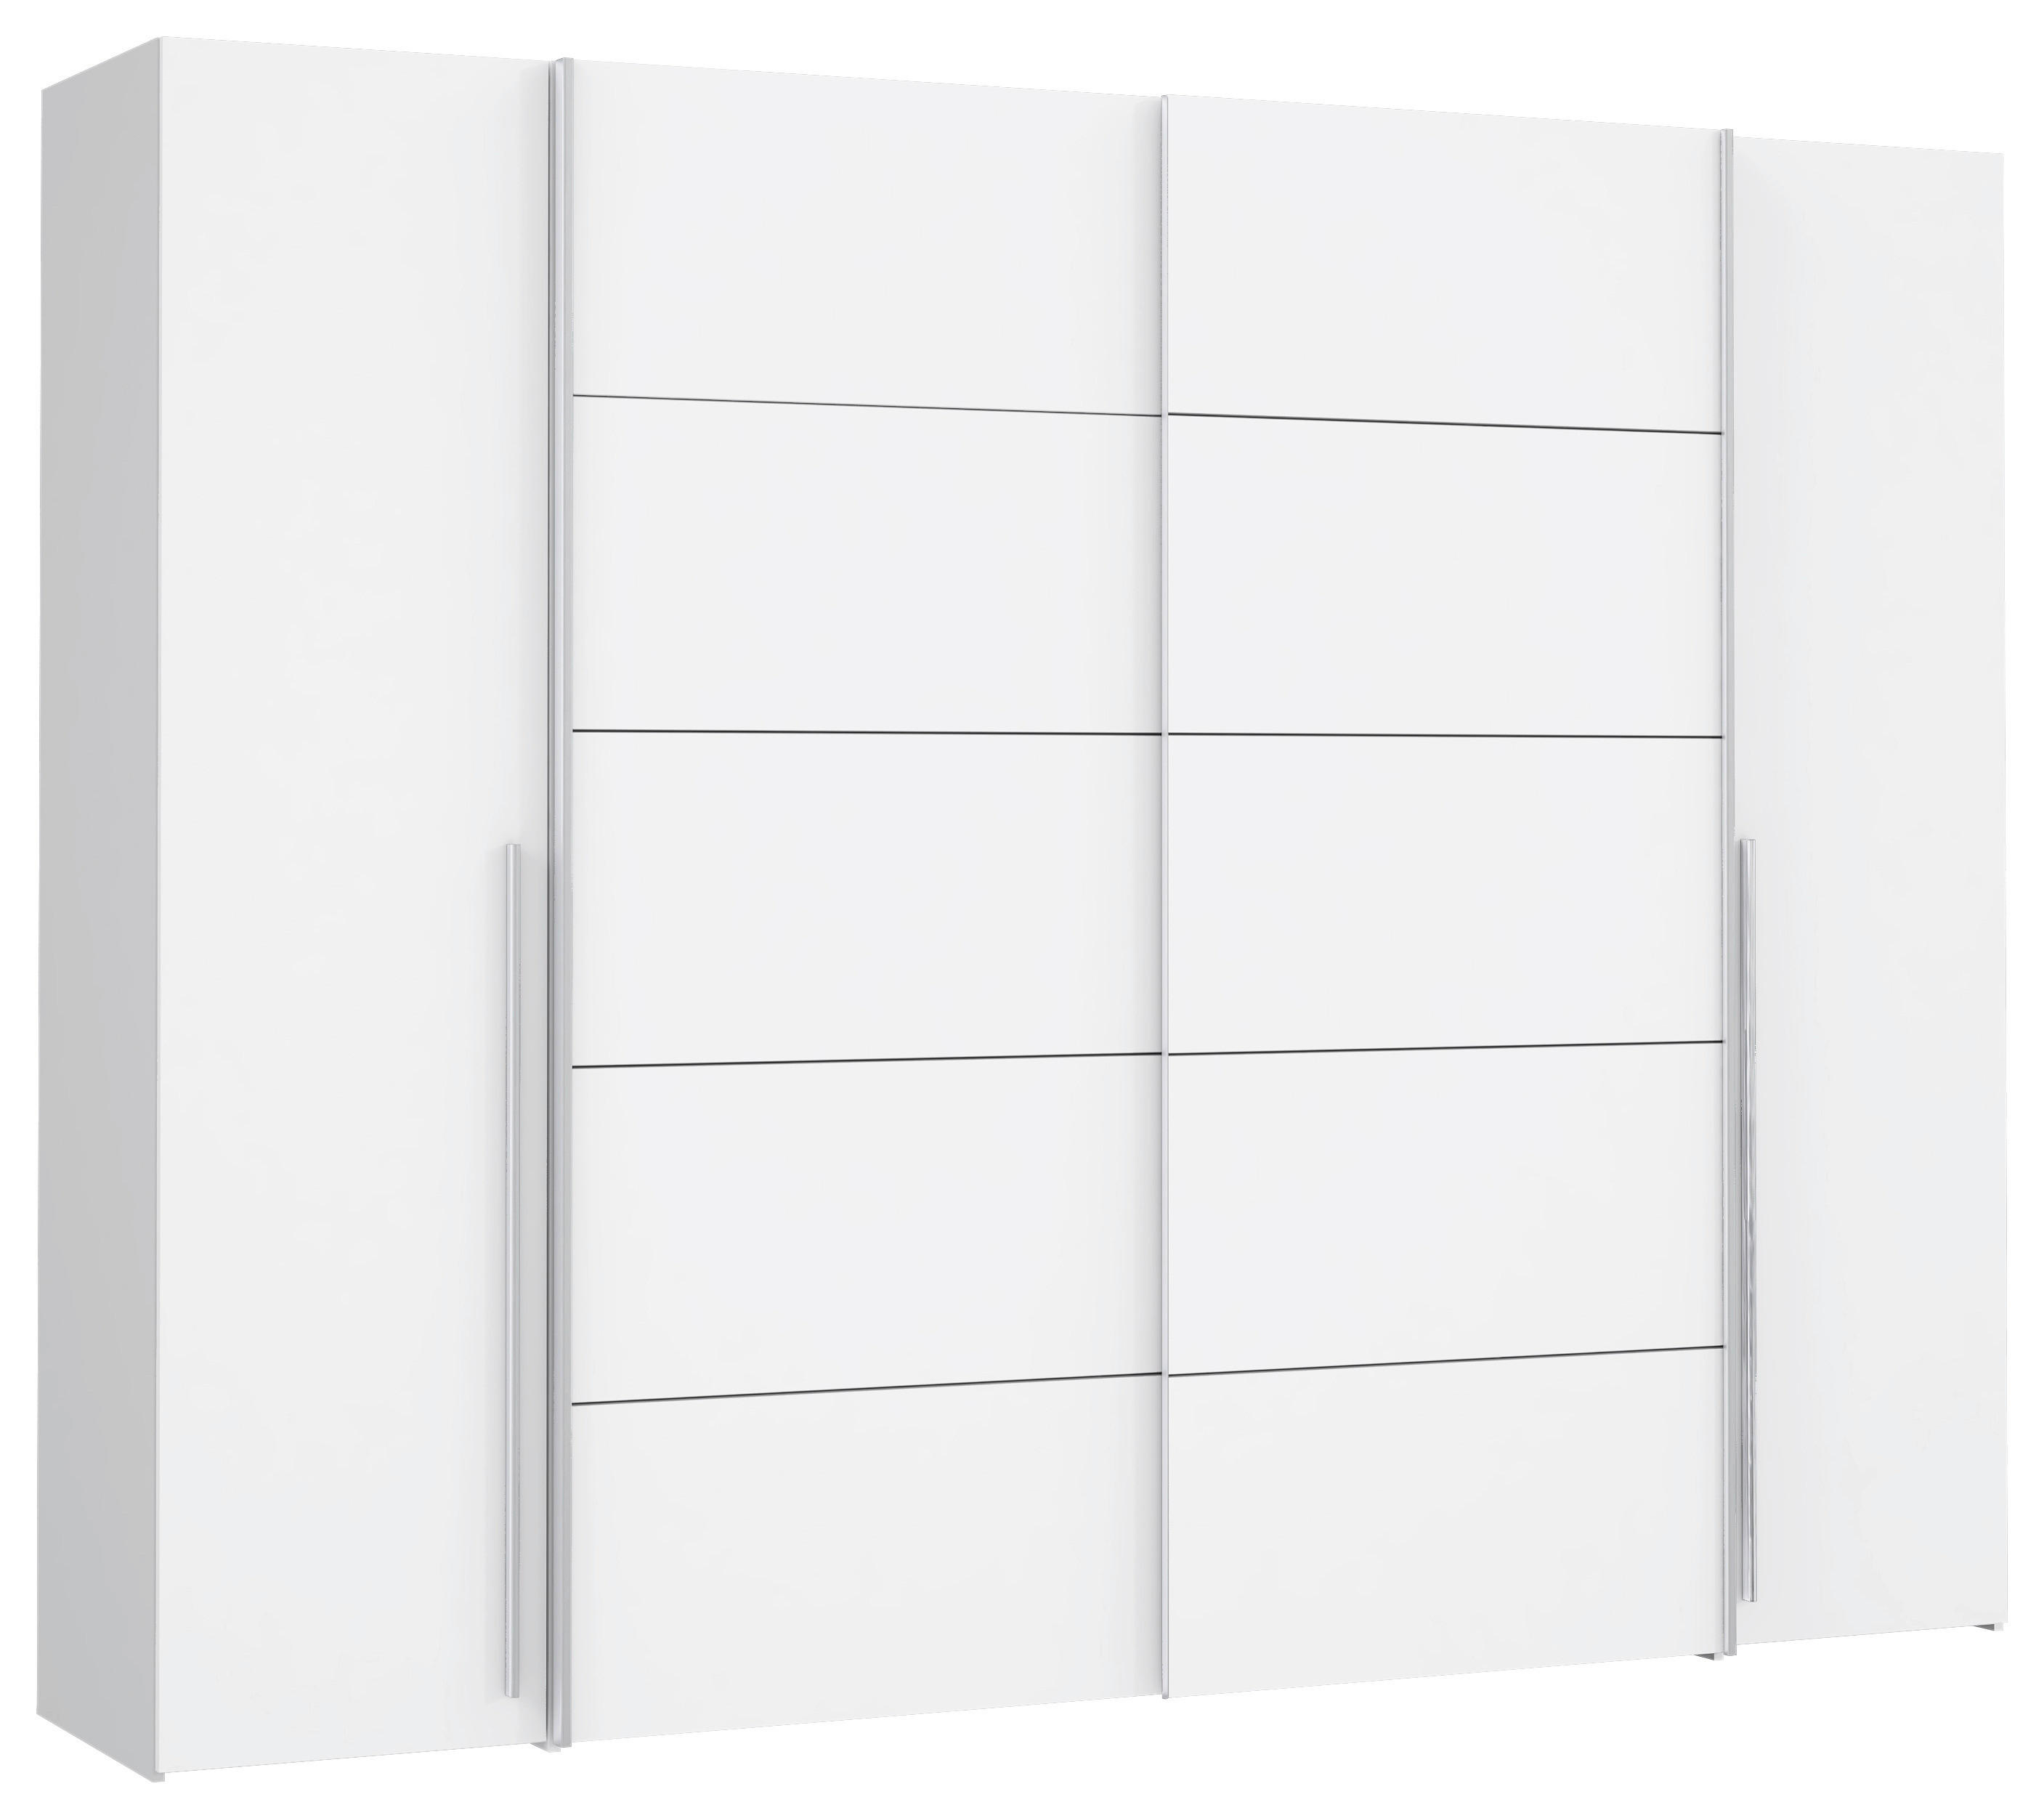 GARDEROB 270/210/61 cm 4-dörrar - vit/aluminiumfärgad, Modern, metall/träbaserade material (270/210/61cm) - MID.YOU